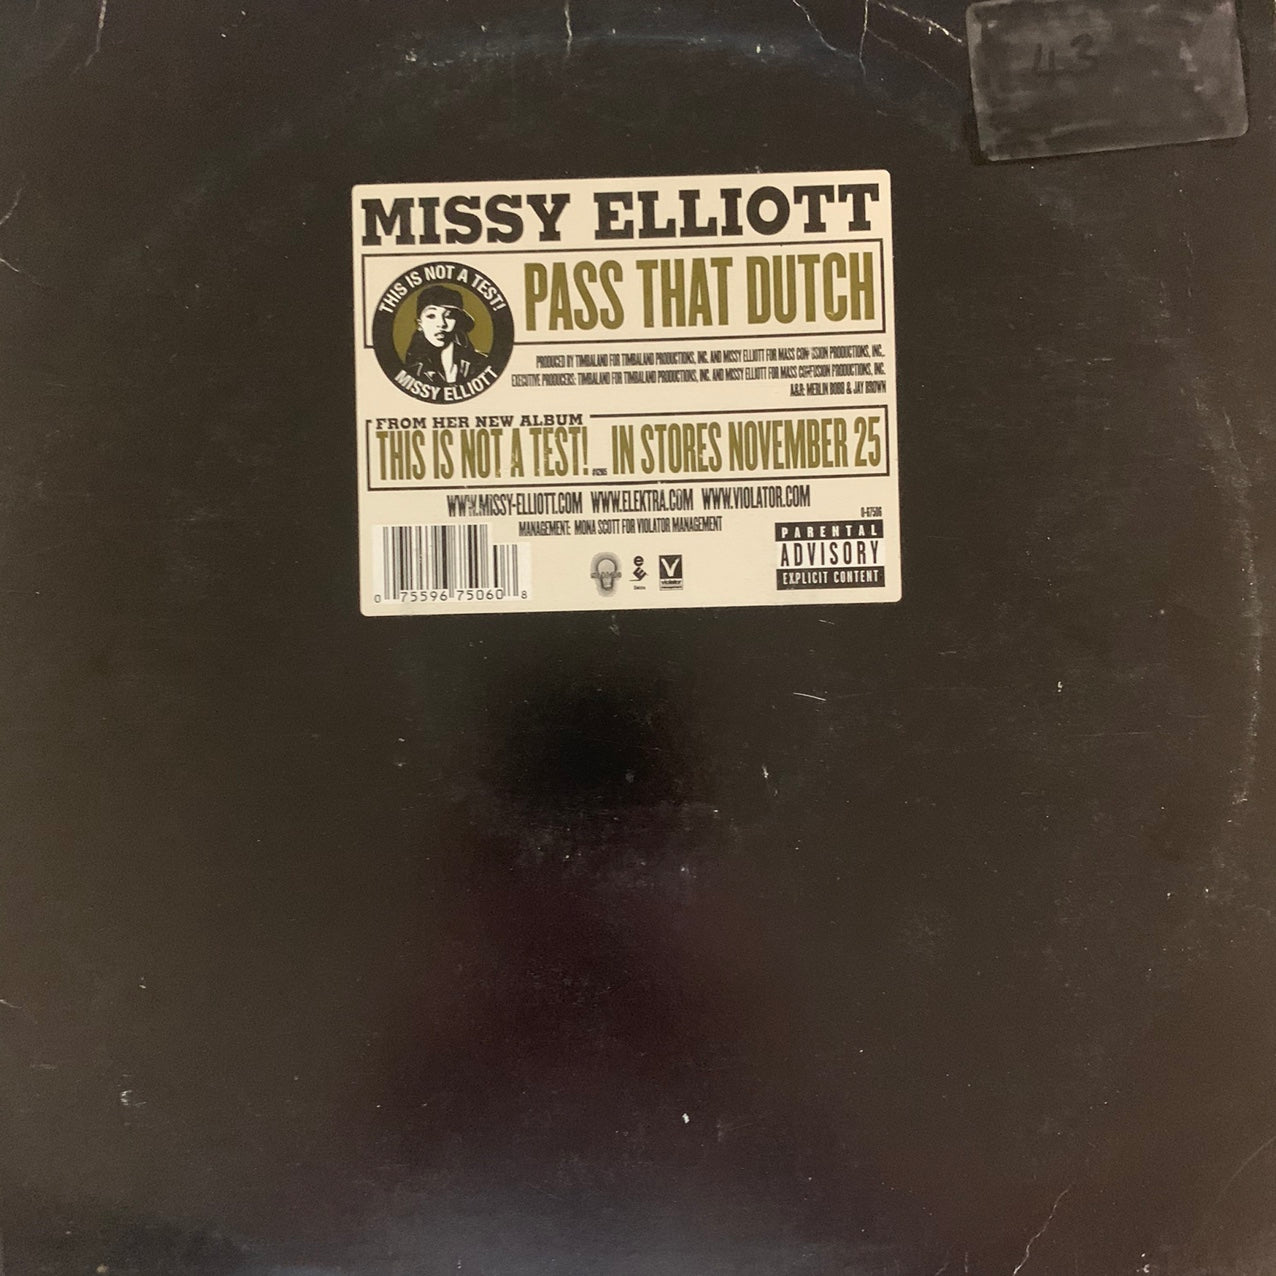 Missy Elliott “Pass That Dutch” / “Wake up” 8 Track 12inch Vinyl